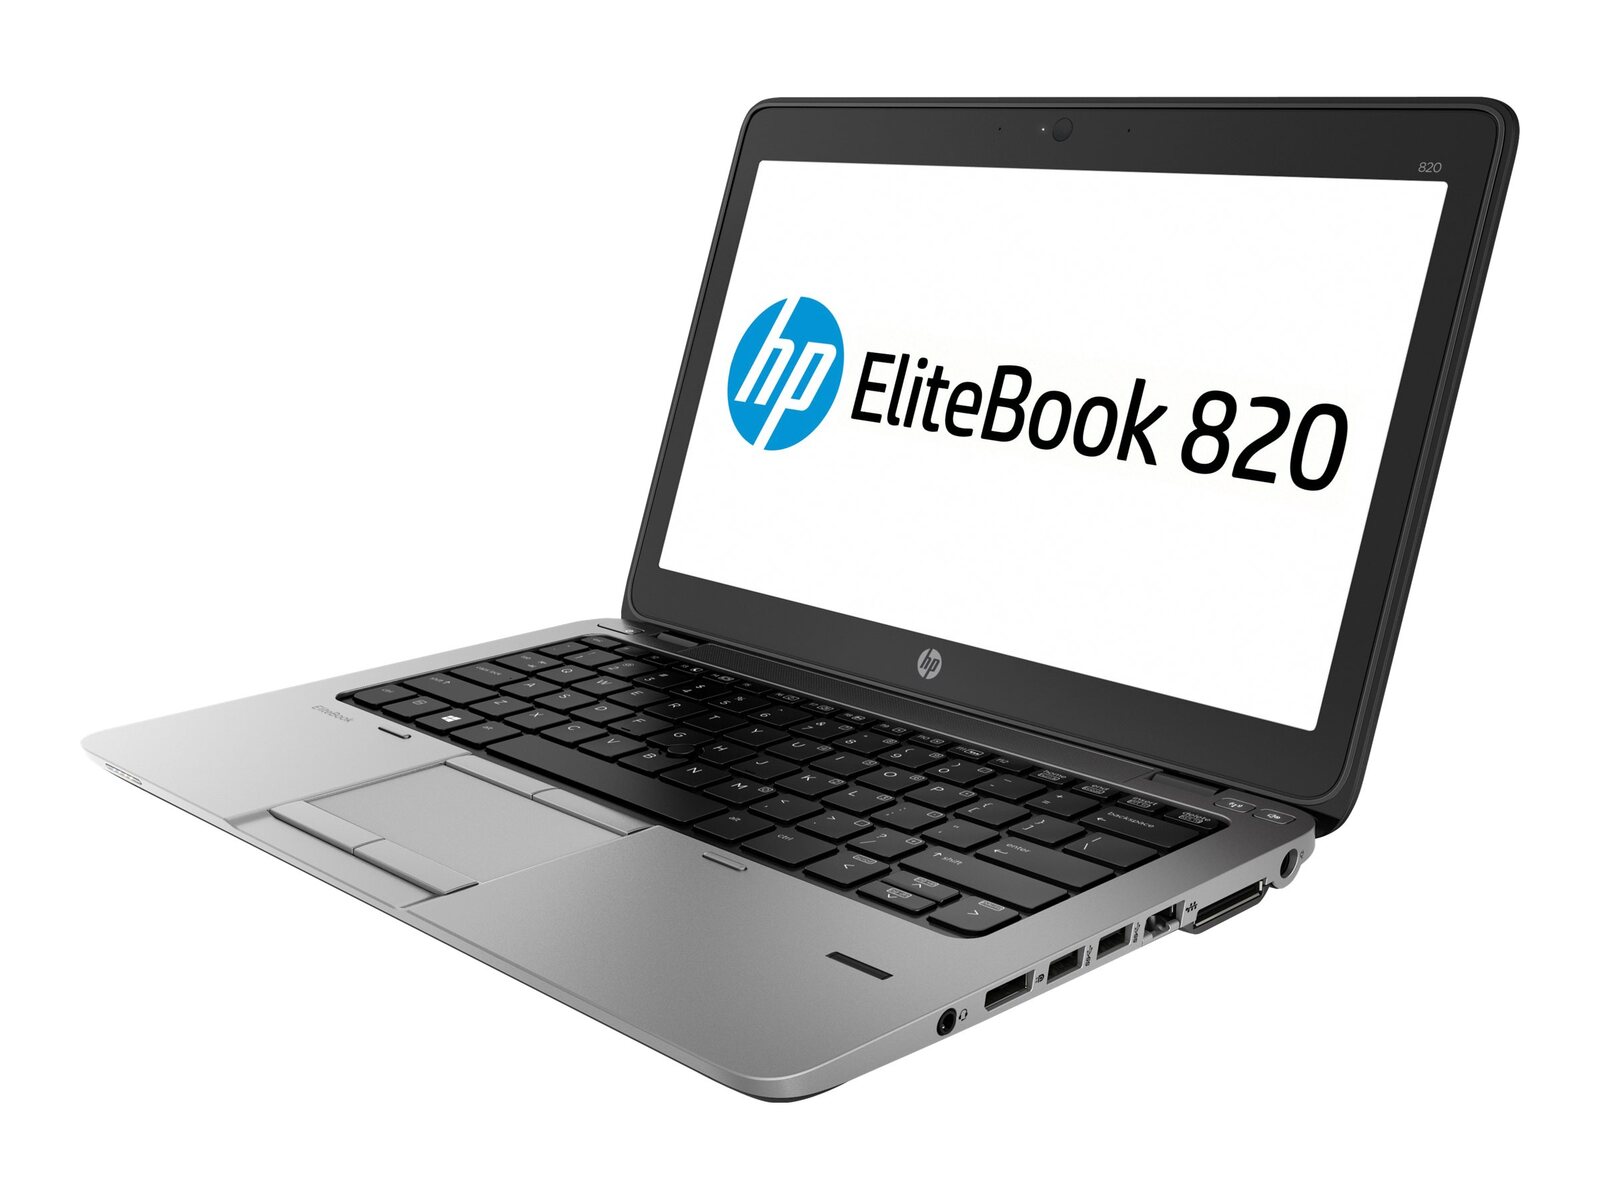 Refurbished HP EliteBook 820 G2 Intel i5 5300U 2.30GHz 4GB RAM